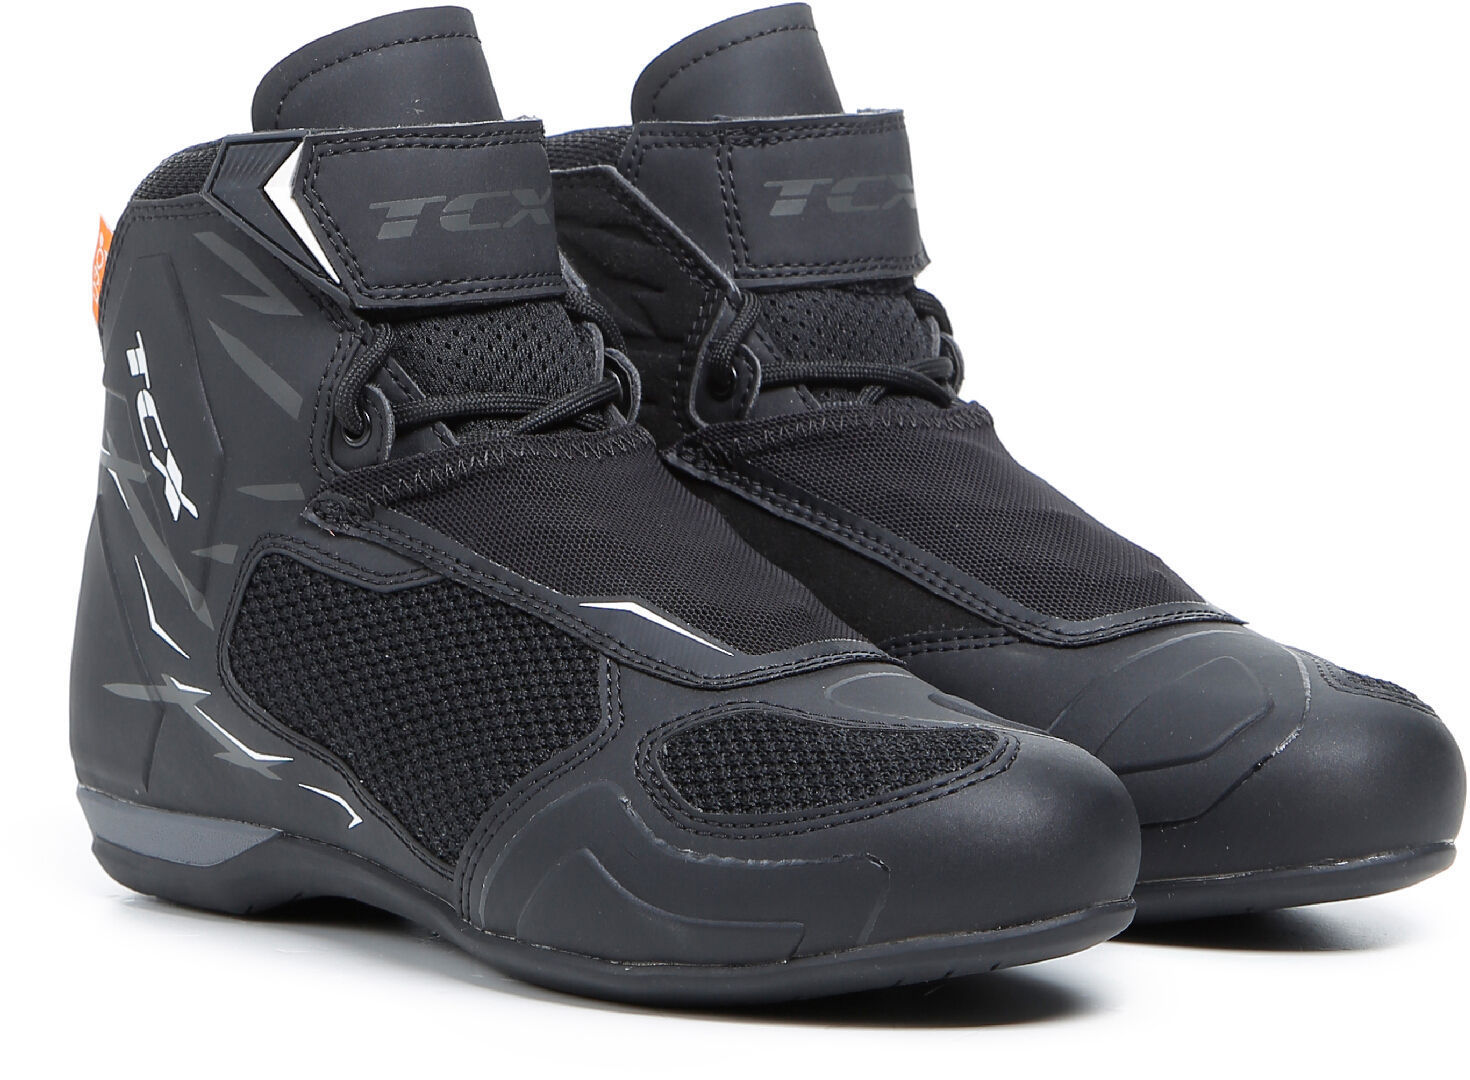 TCX RO4D Air Zapatos de moto - Negro Gris (43)